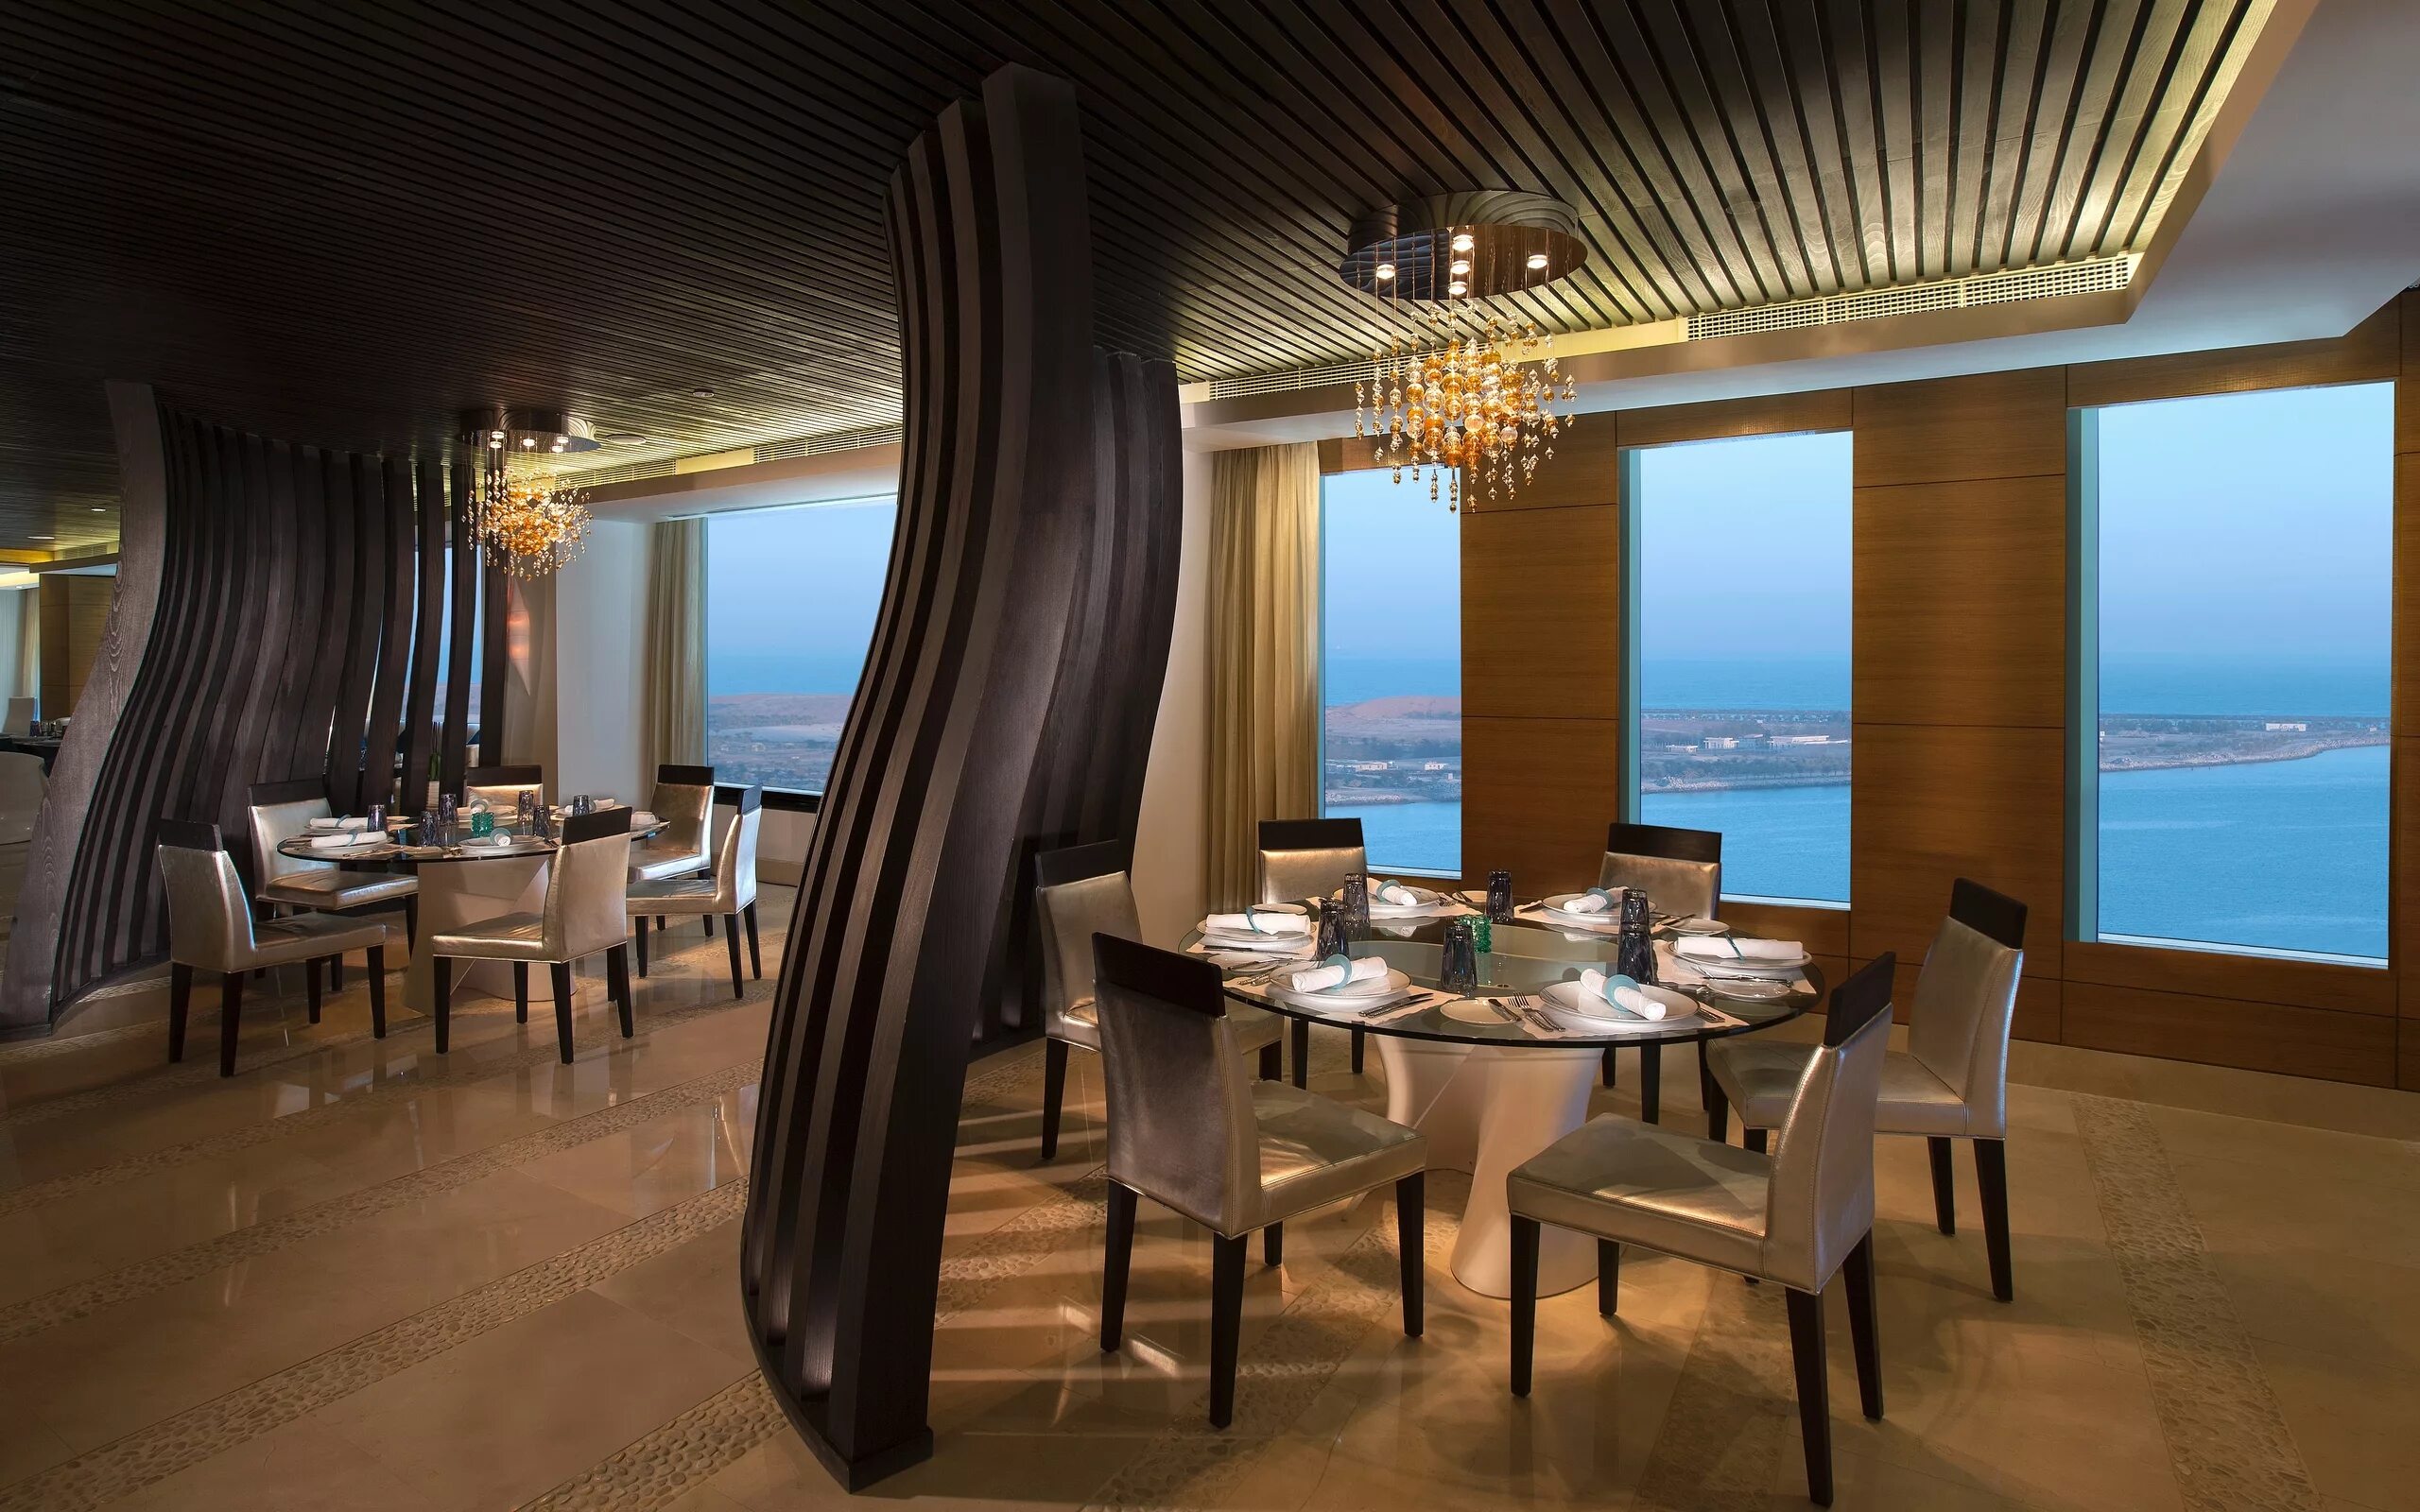 Софитель Абу Даби отель. Рестораны в Абу Даби. Ресторан панорама Батуми. Красивый интерьер ресторана.